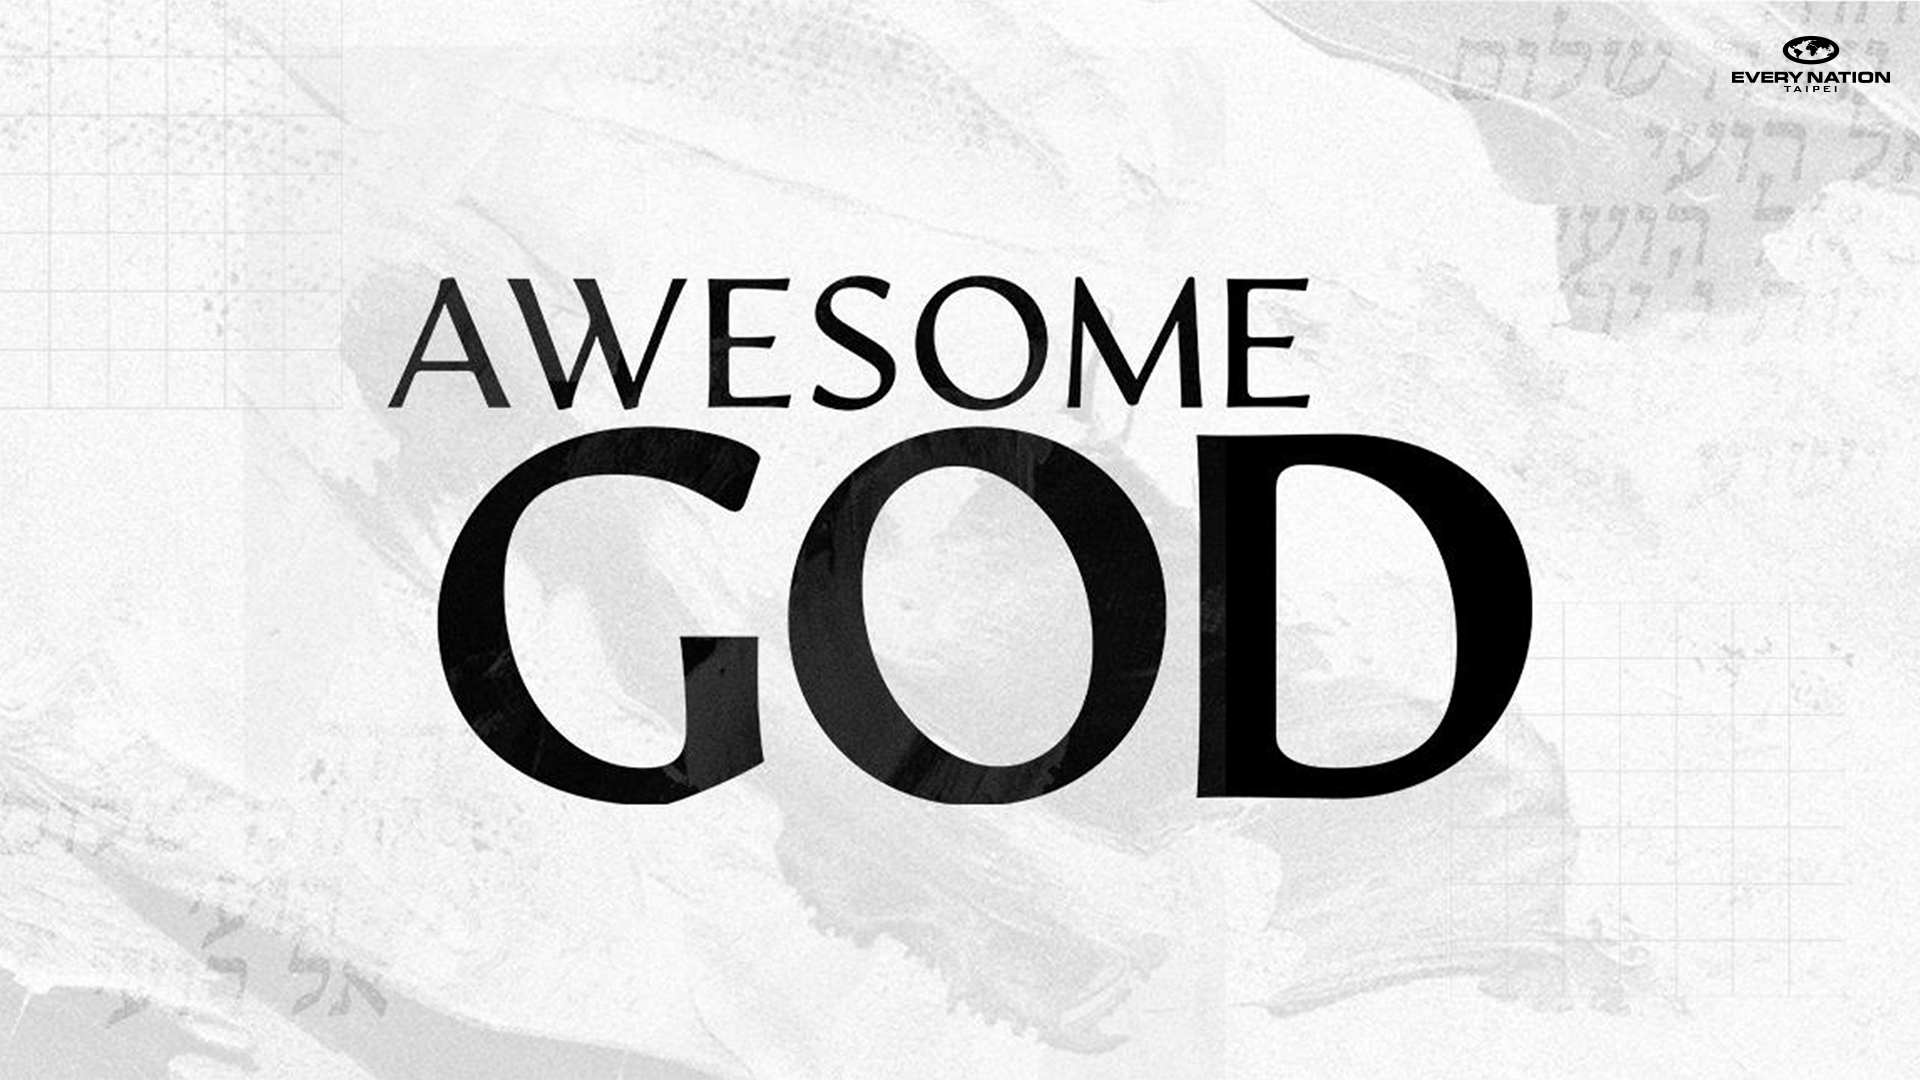 Awesome God: My Shalom